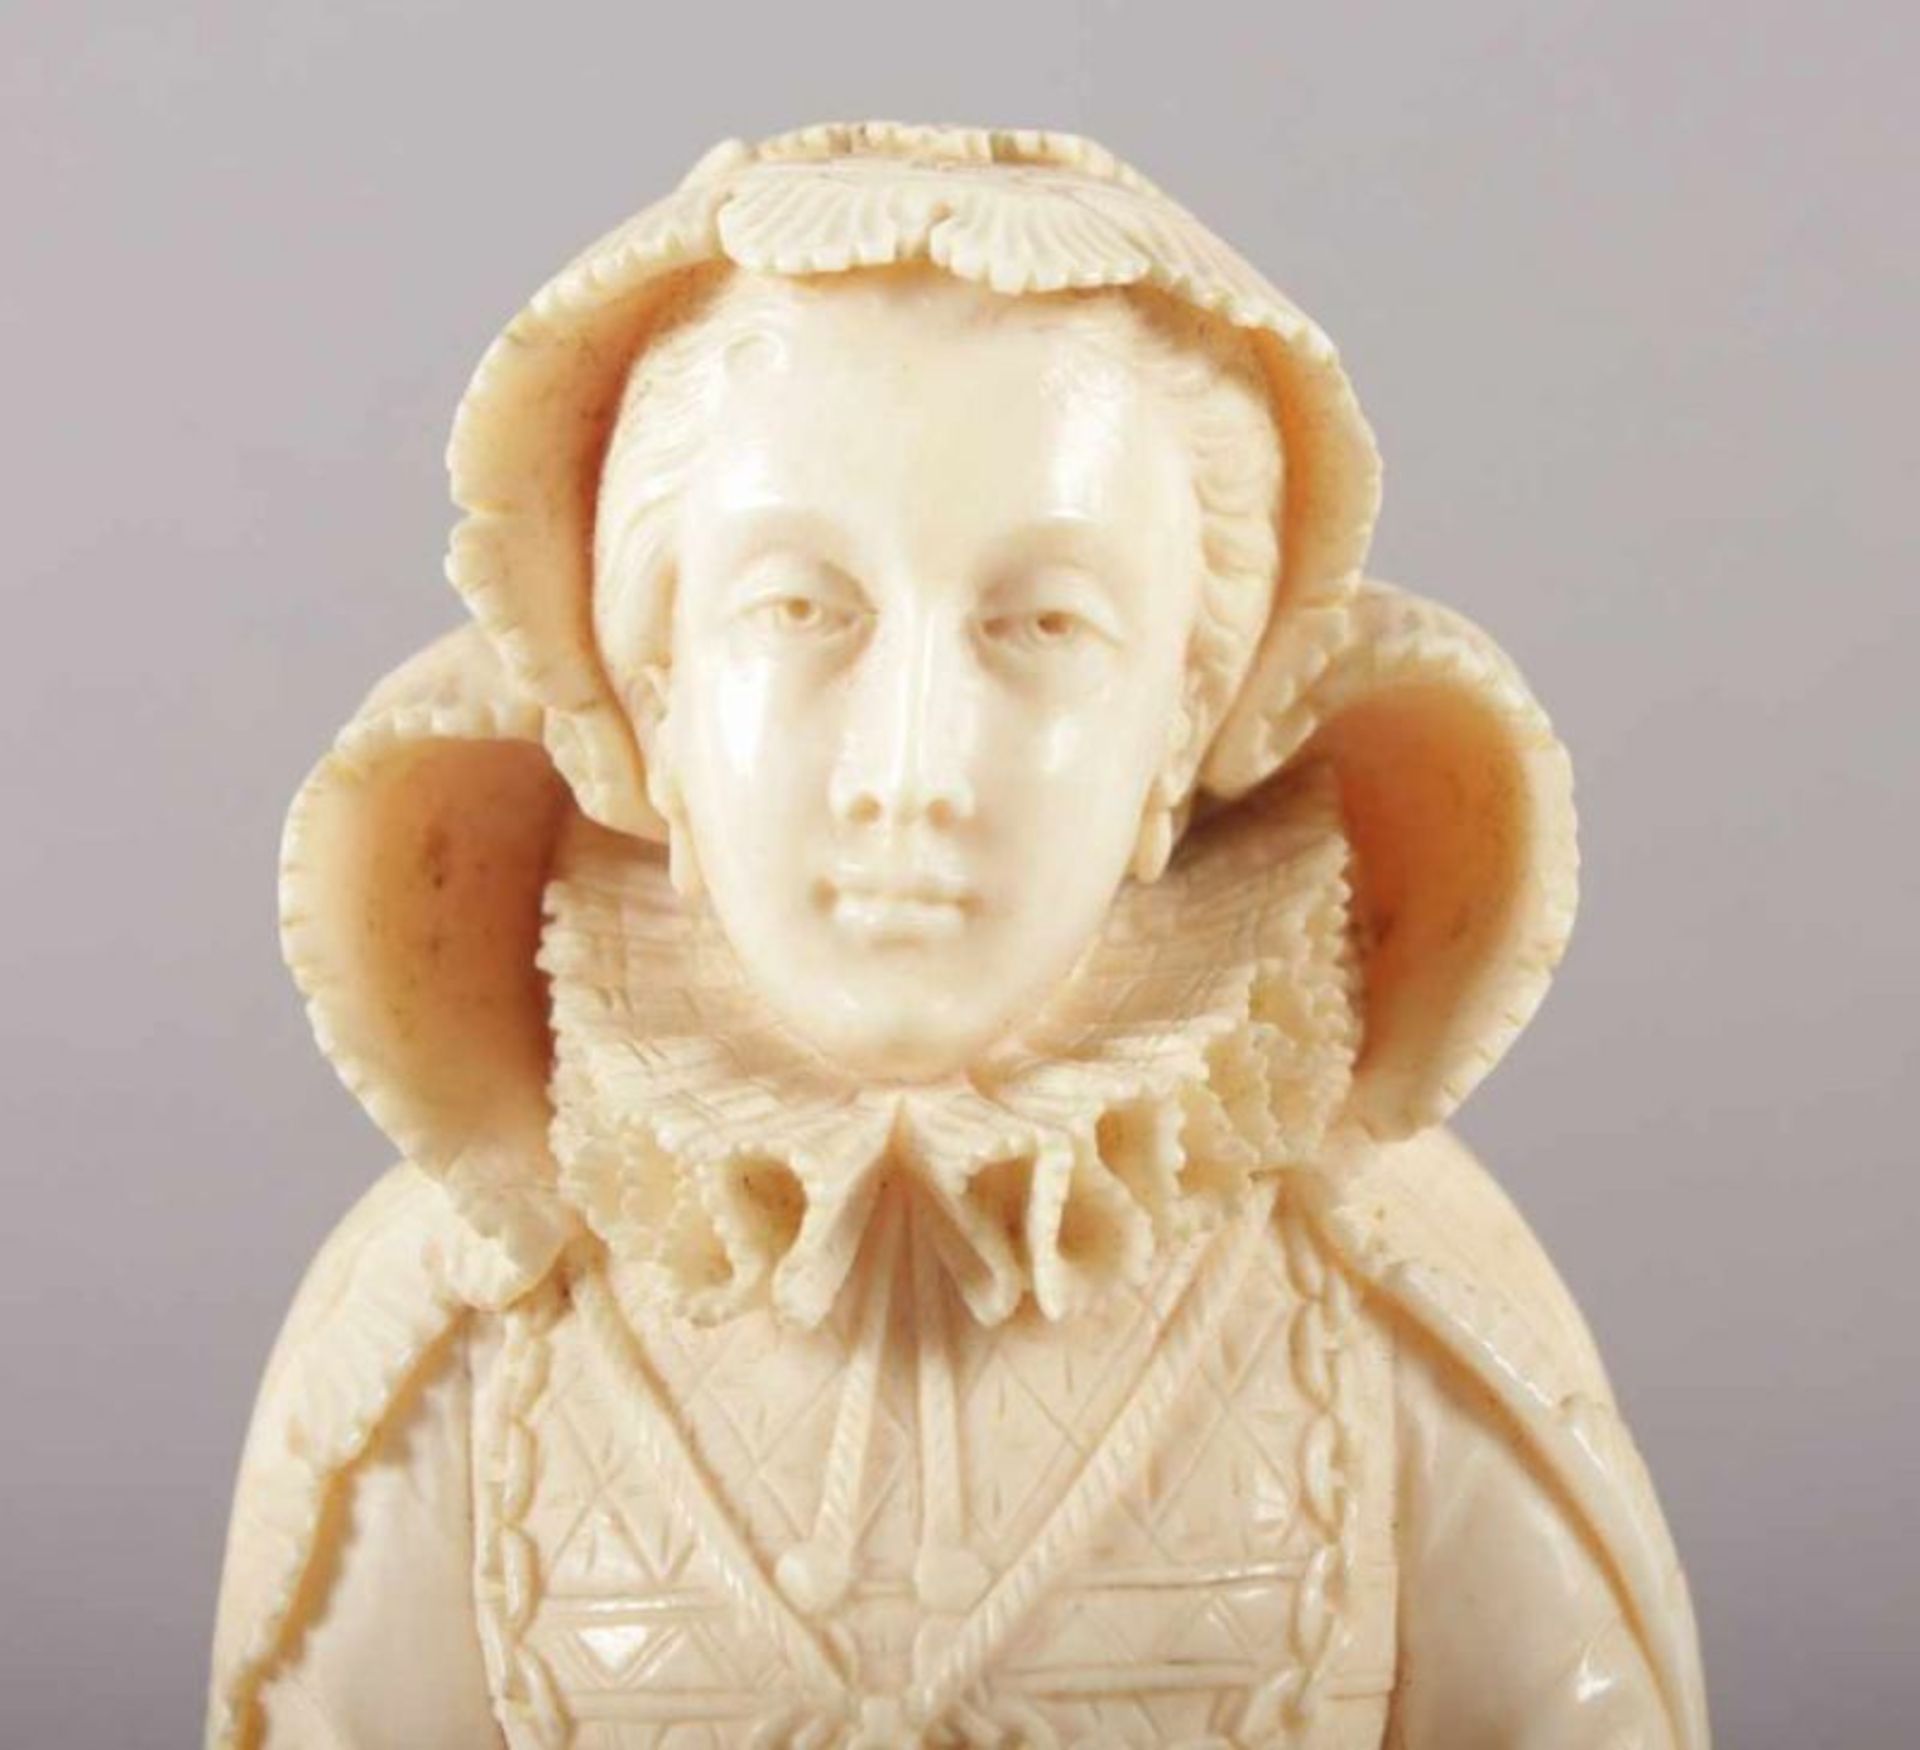 SCHREINFIGUR DER MARIA STUART, Elfenbein, fein geschnitzt, aufklappbarer Korpus mit Szenen aus der - Image 5 of 7